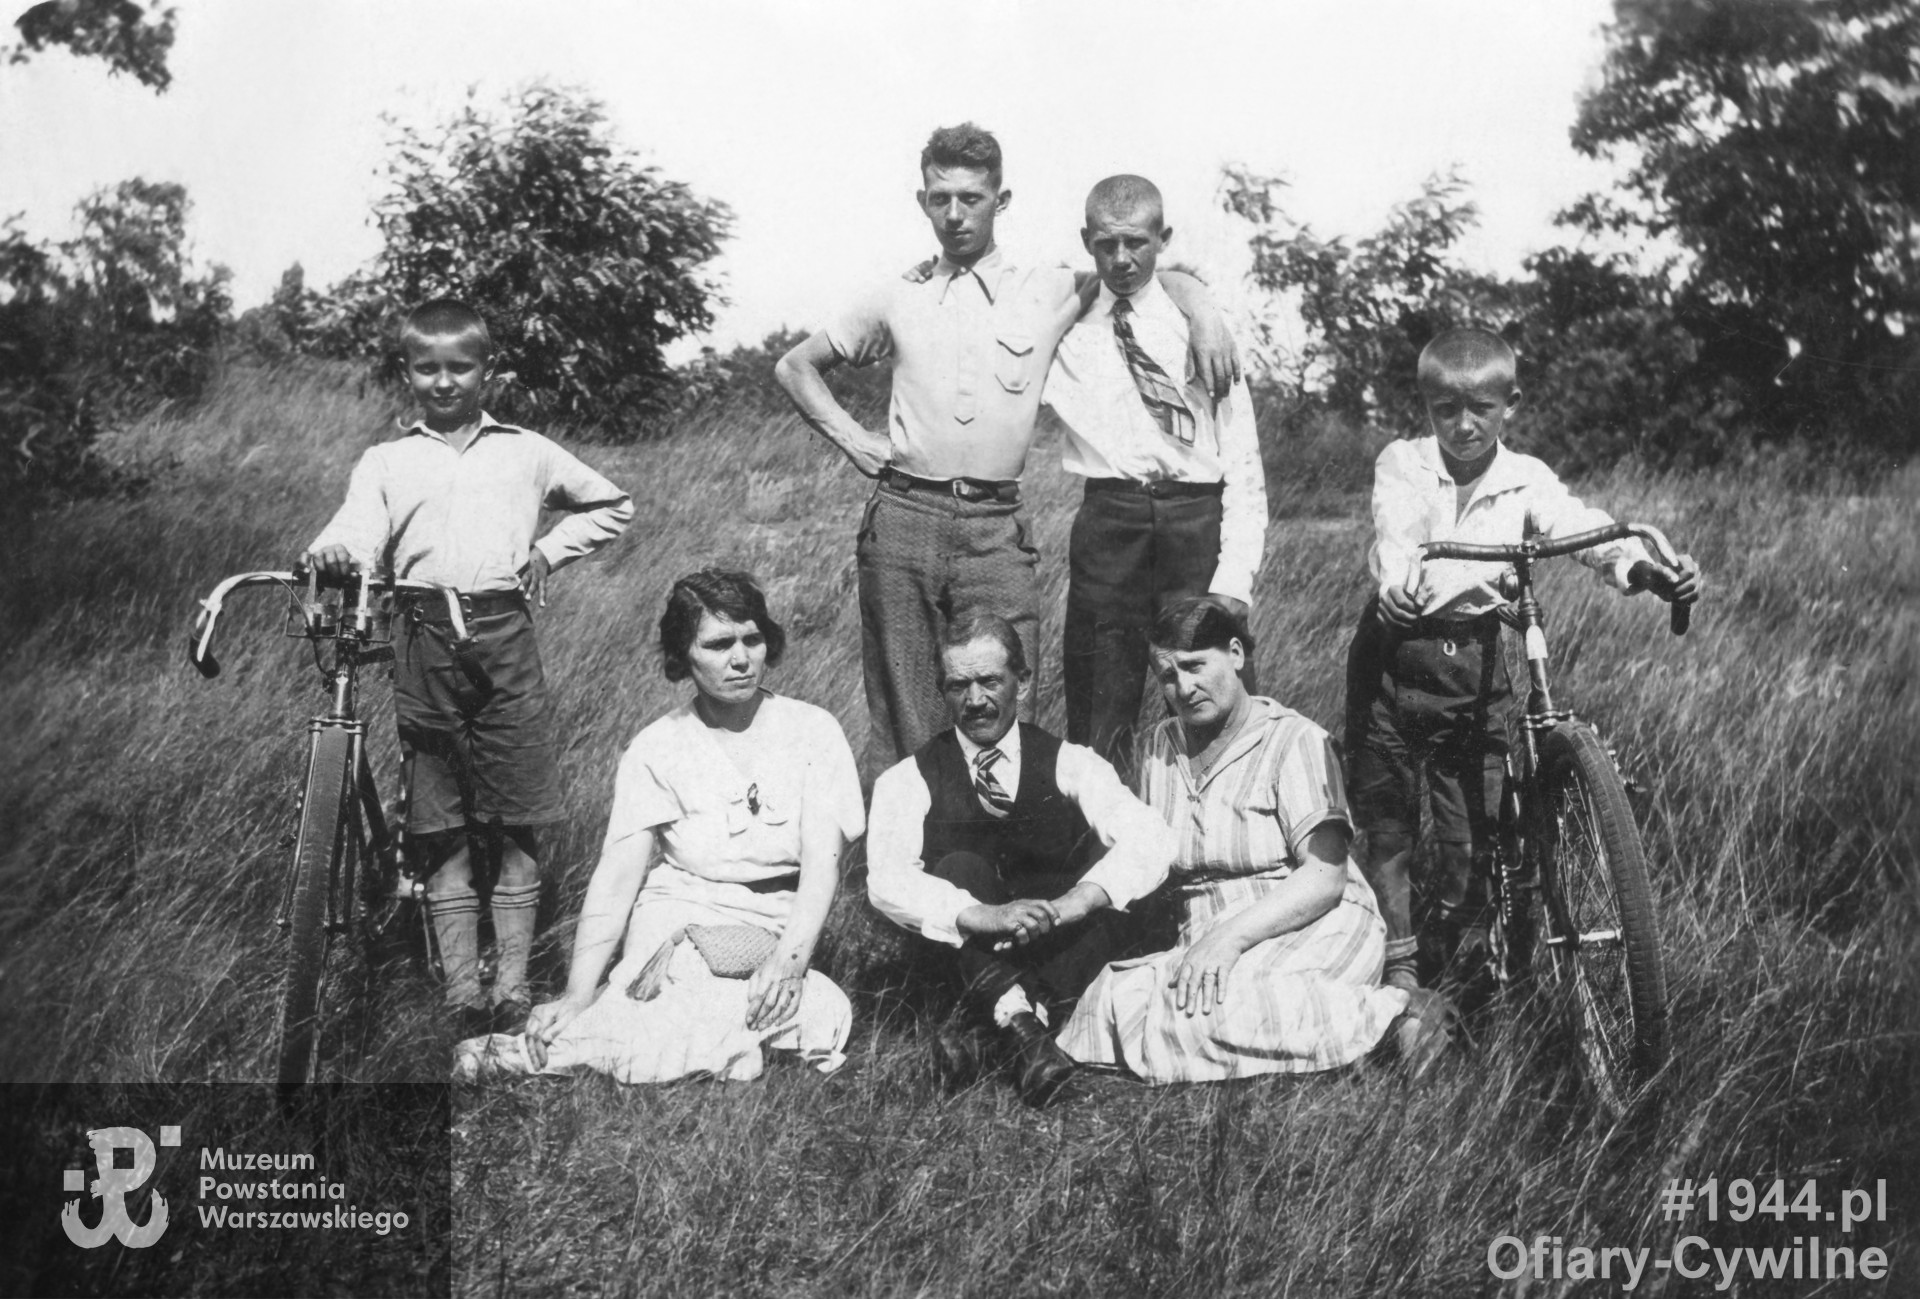 Bracia Piegat z rodzicami, widoczni na zdjęciu: >Ryszard (najwyższy stojący) i Wiesław (z rowerem, po prawej stronie). Z drugim rowerem (po lewej) stoi Edward. Fot. z archiwum rodzinnego pana Rafała Piegata.